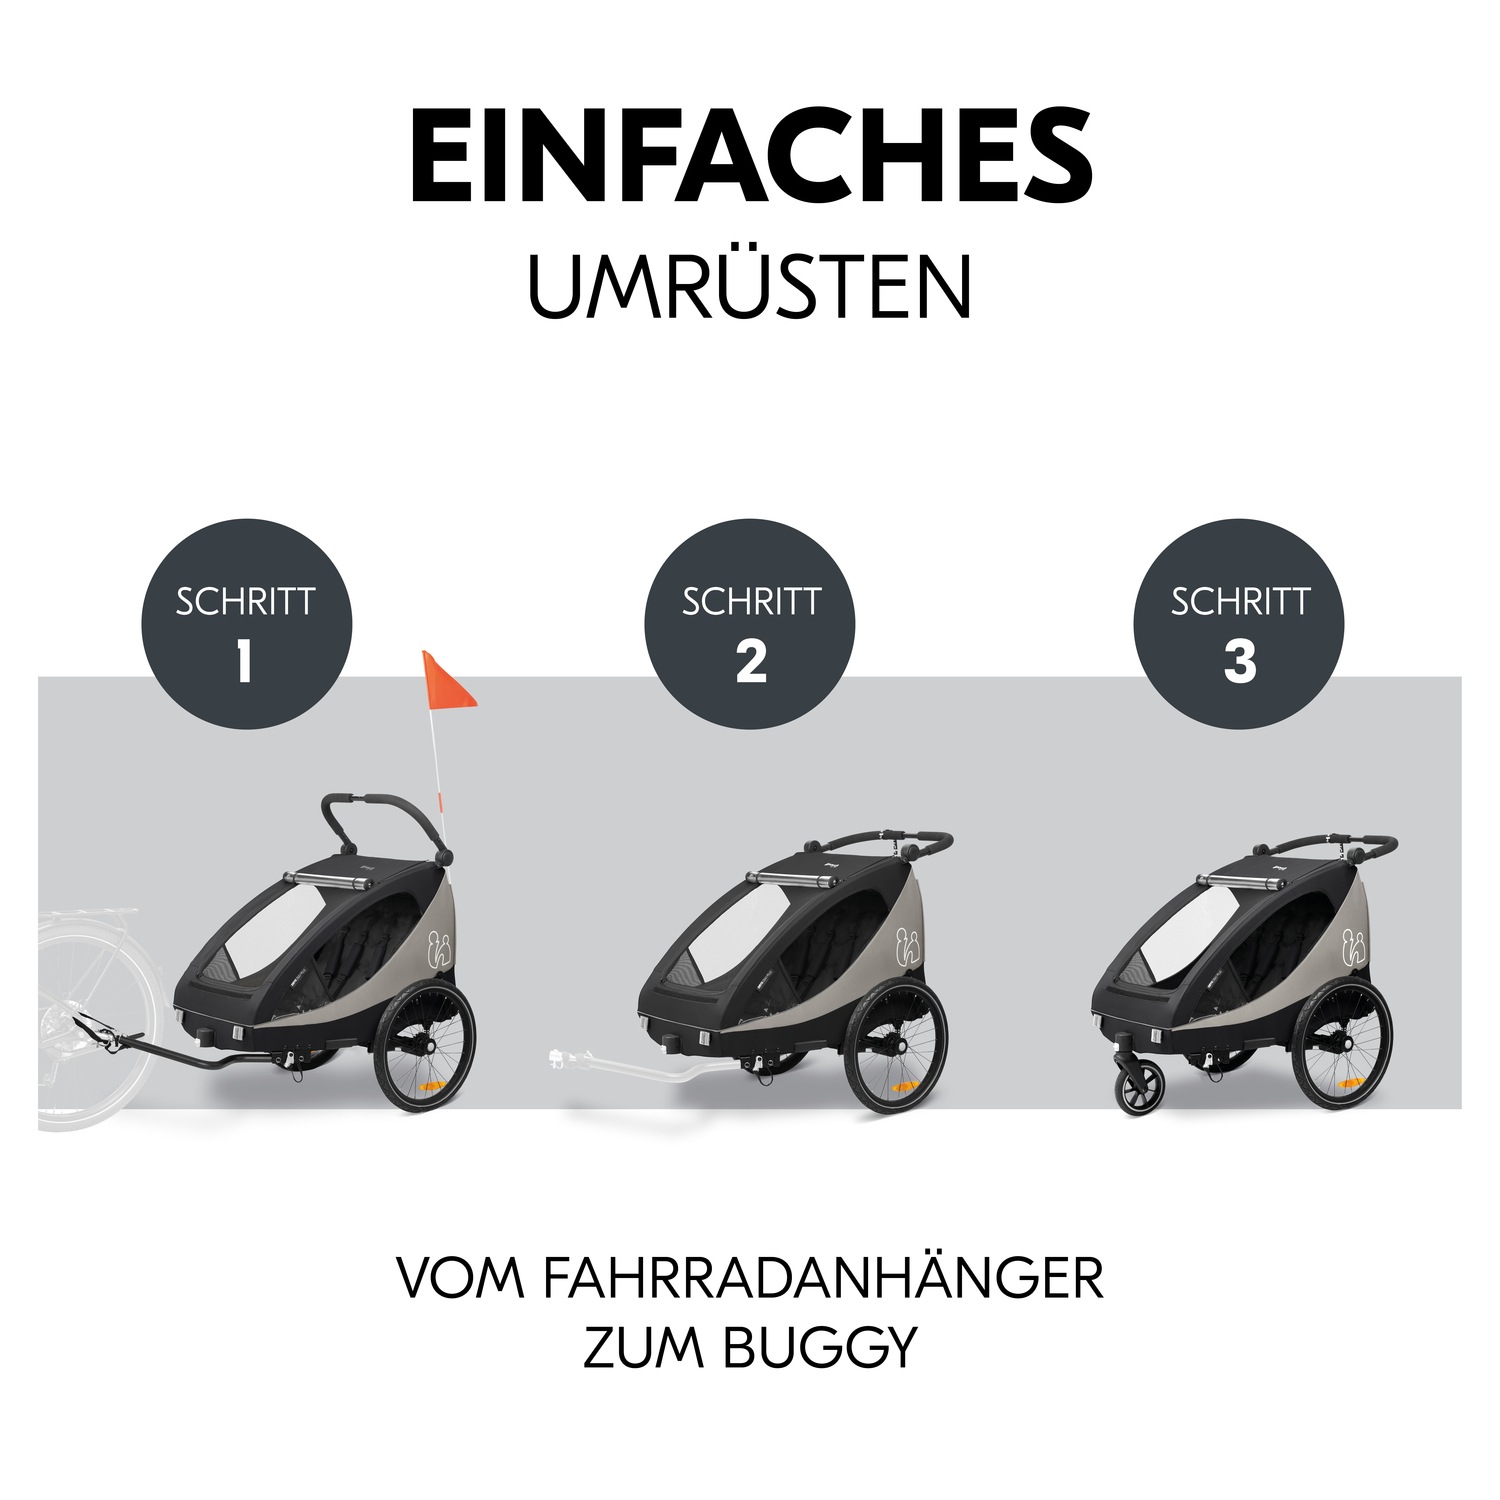 Hauck Fahrradkinderanhänger »2in1 Bike Trailer und Buggy Dryk Duo Plus, black«, für 2 Kinder; inklusive Deichsel